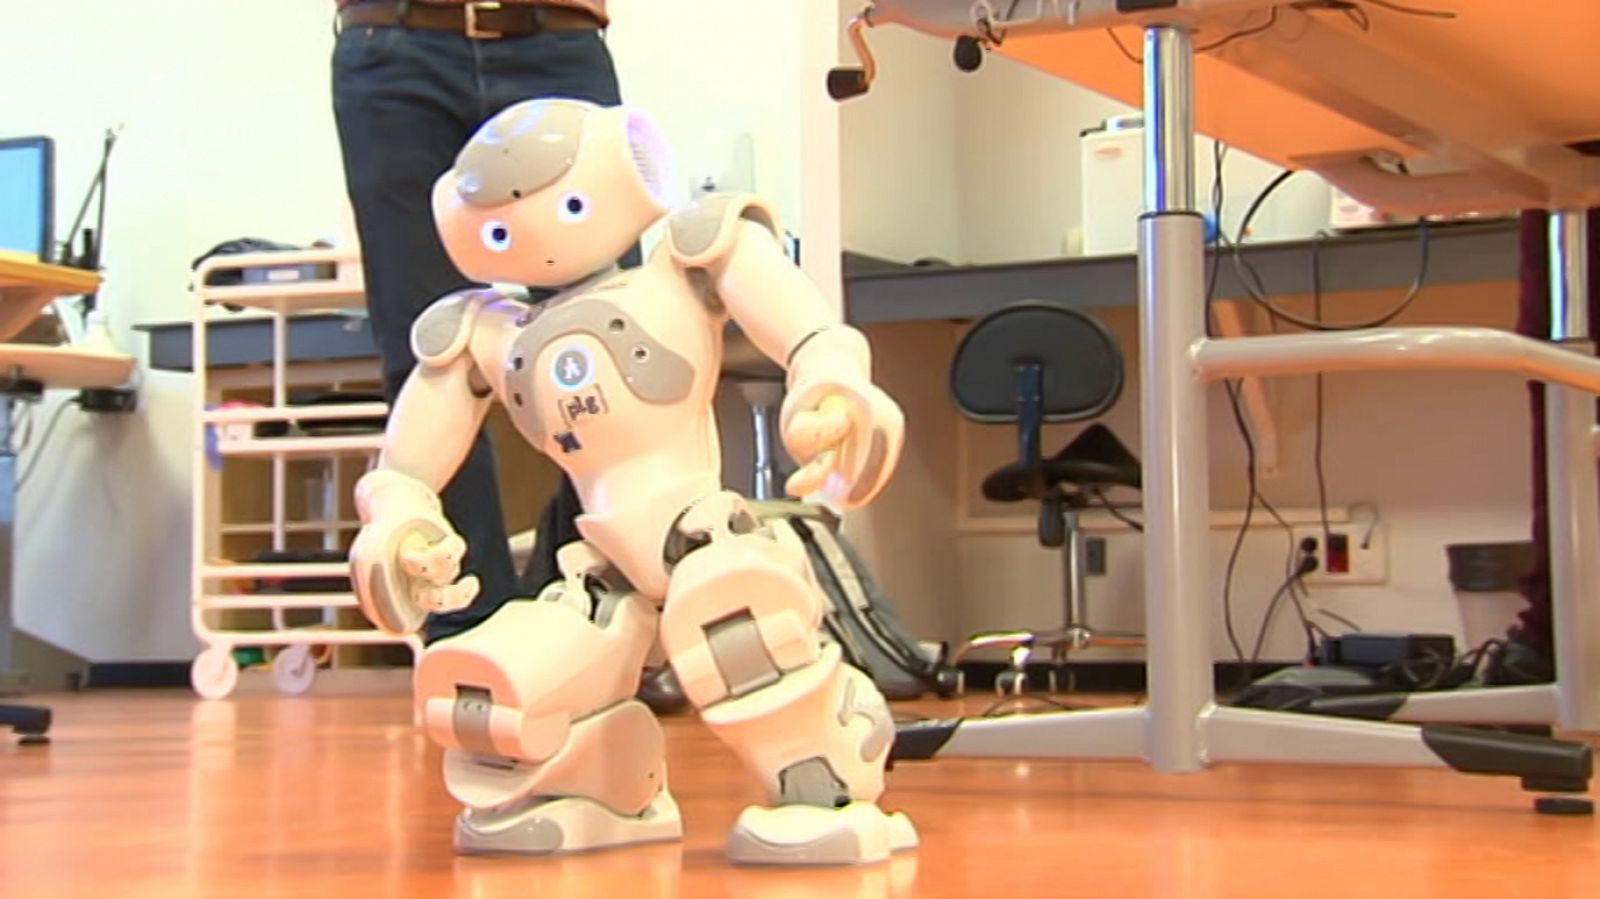 Lab24 - Rehabilitación robótica y Programados para durar - RTVE.es